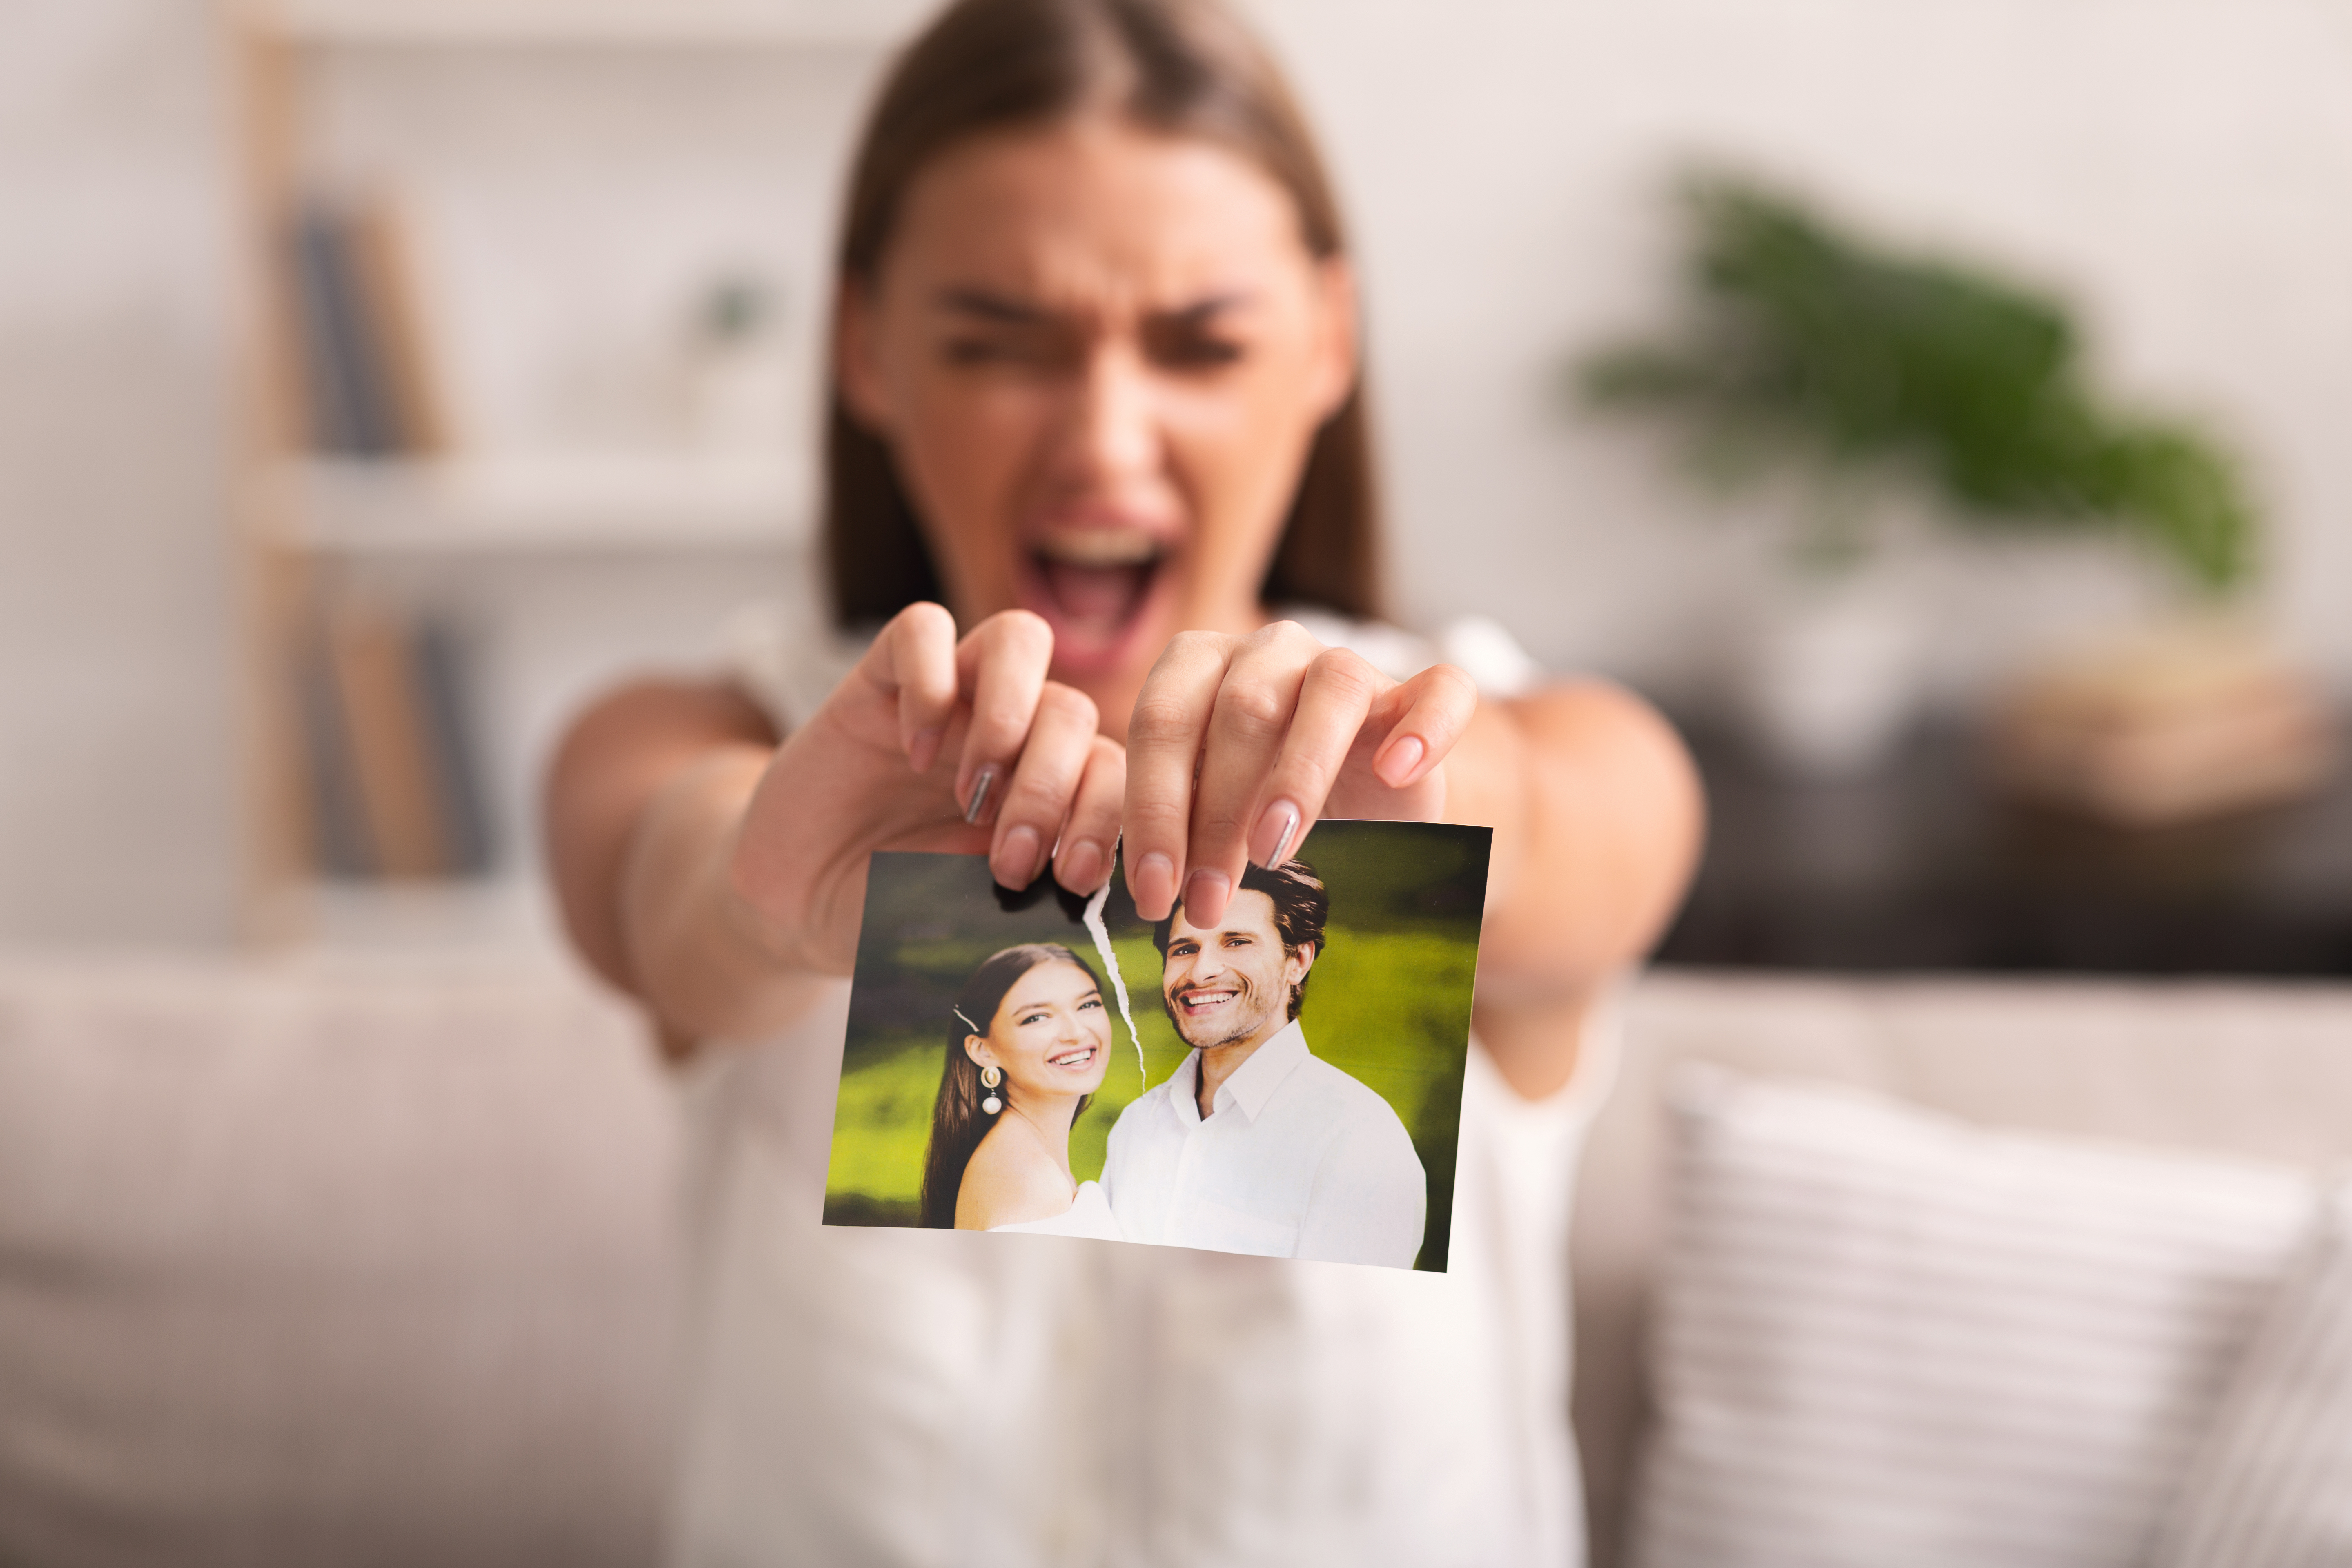 Une femme déchire une photo d'elle et d'un homme | Source : Shutterstock